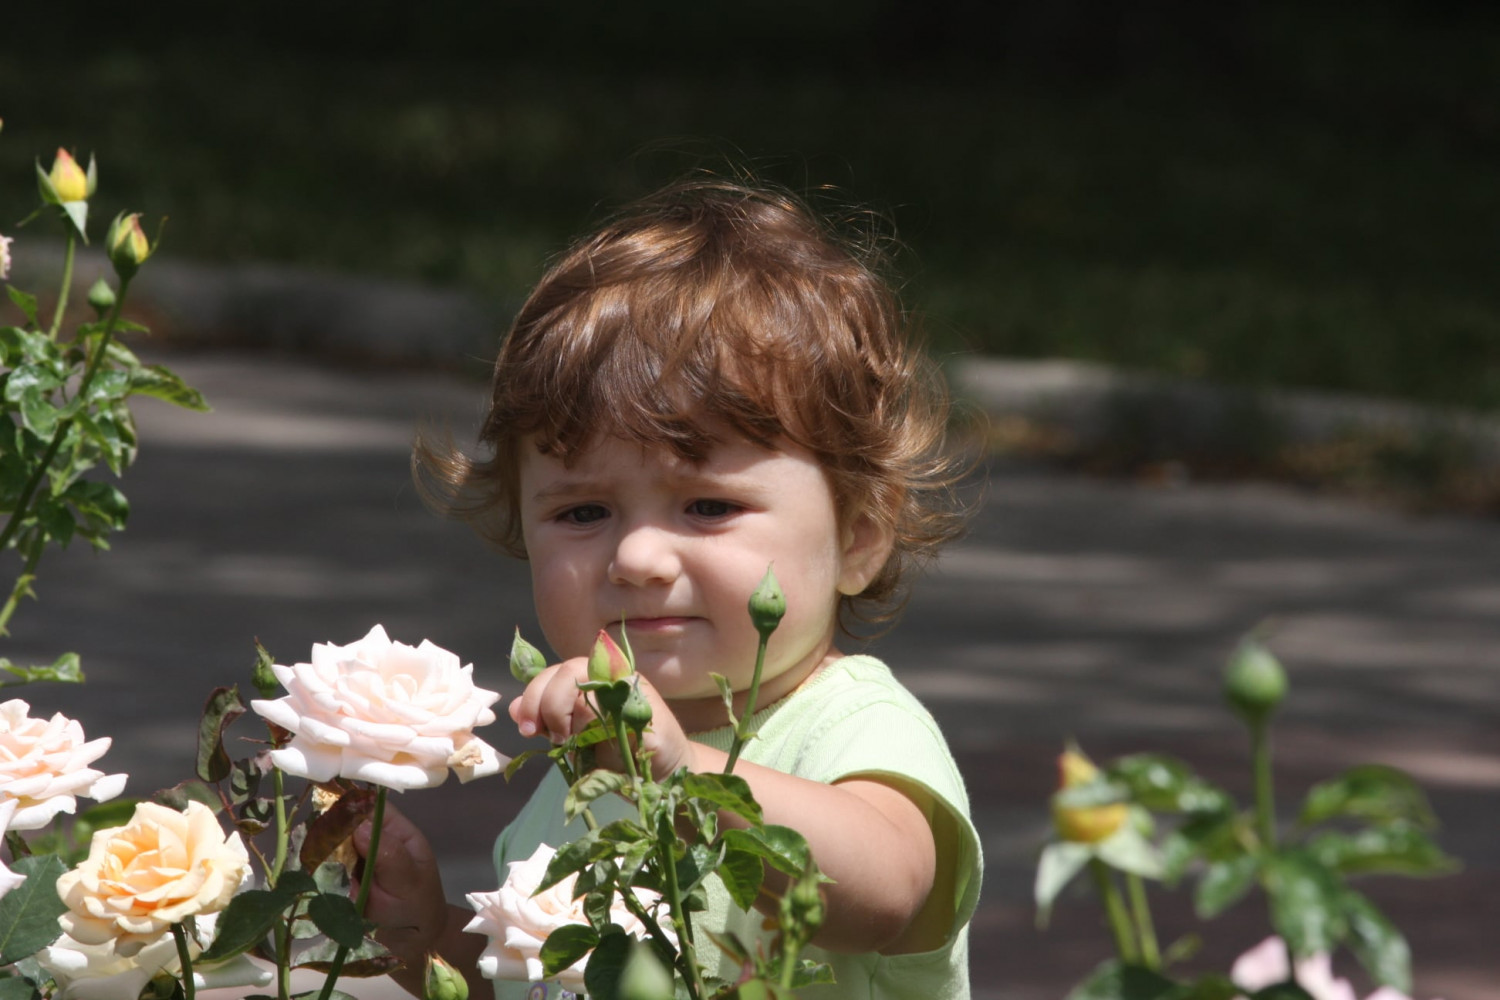 Em bé trong vườn hồng ở Donetsk. Nơi đây có rất nhiều hoa hồng, kể cả hoa hồng được đúc bằng thép.